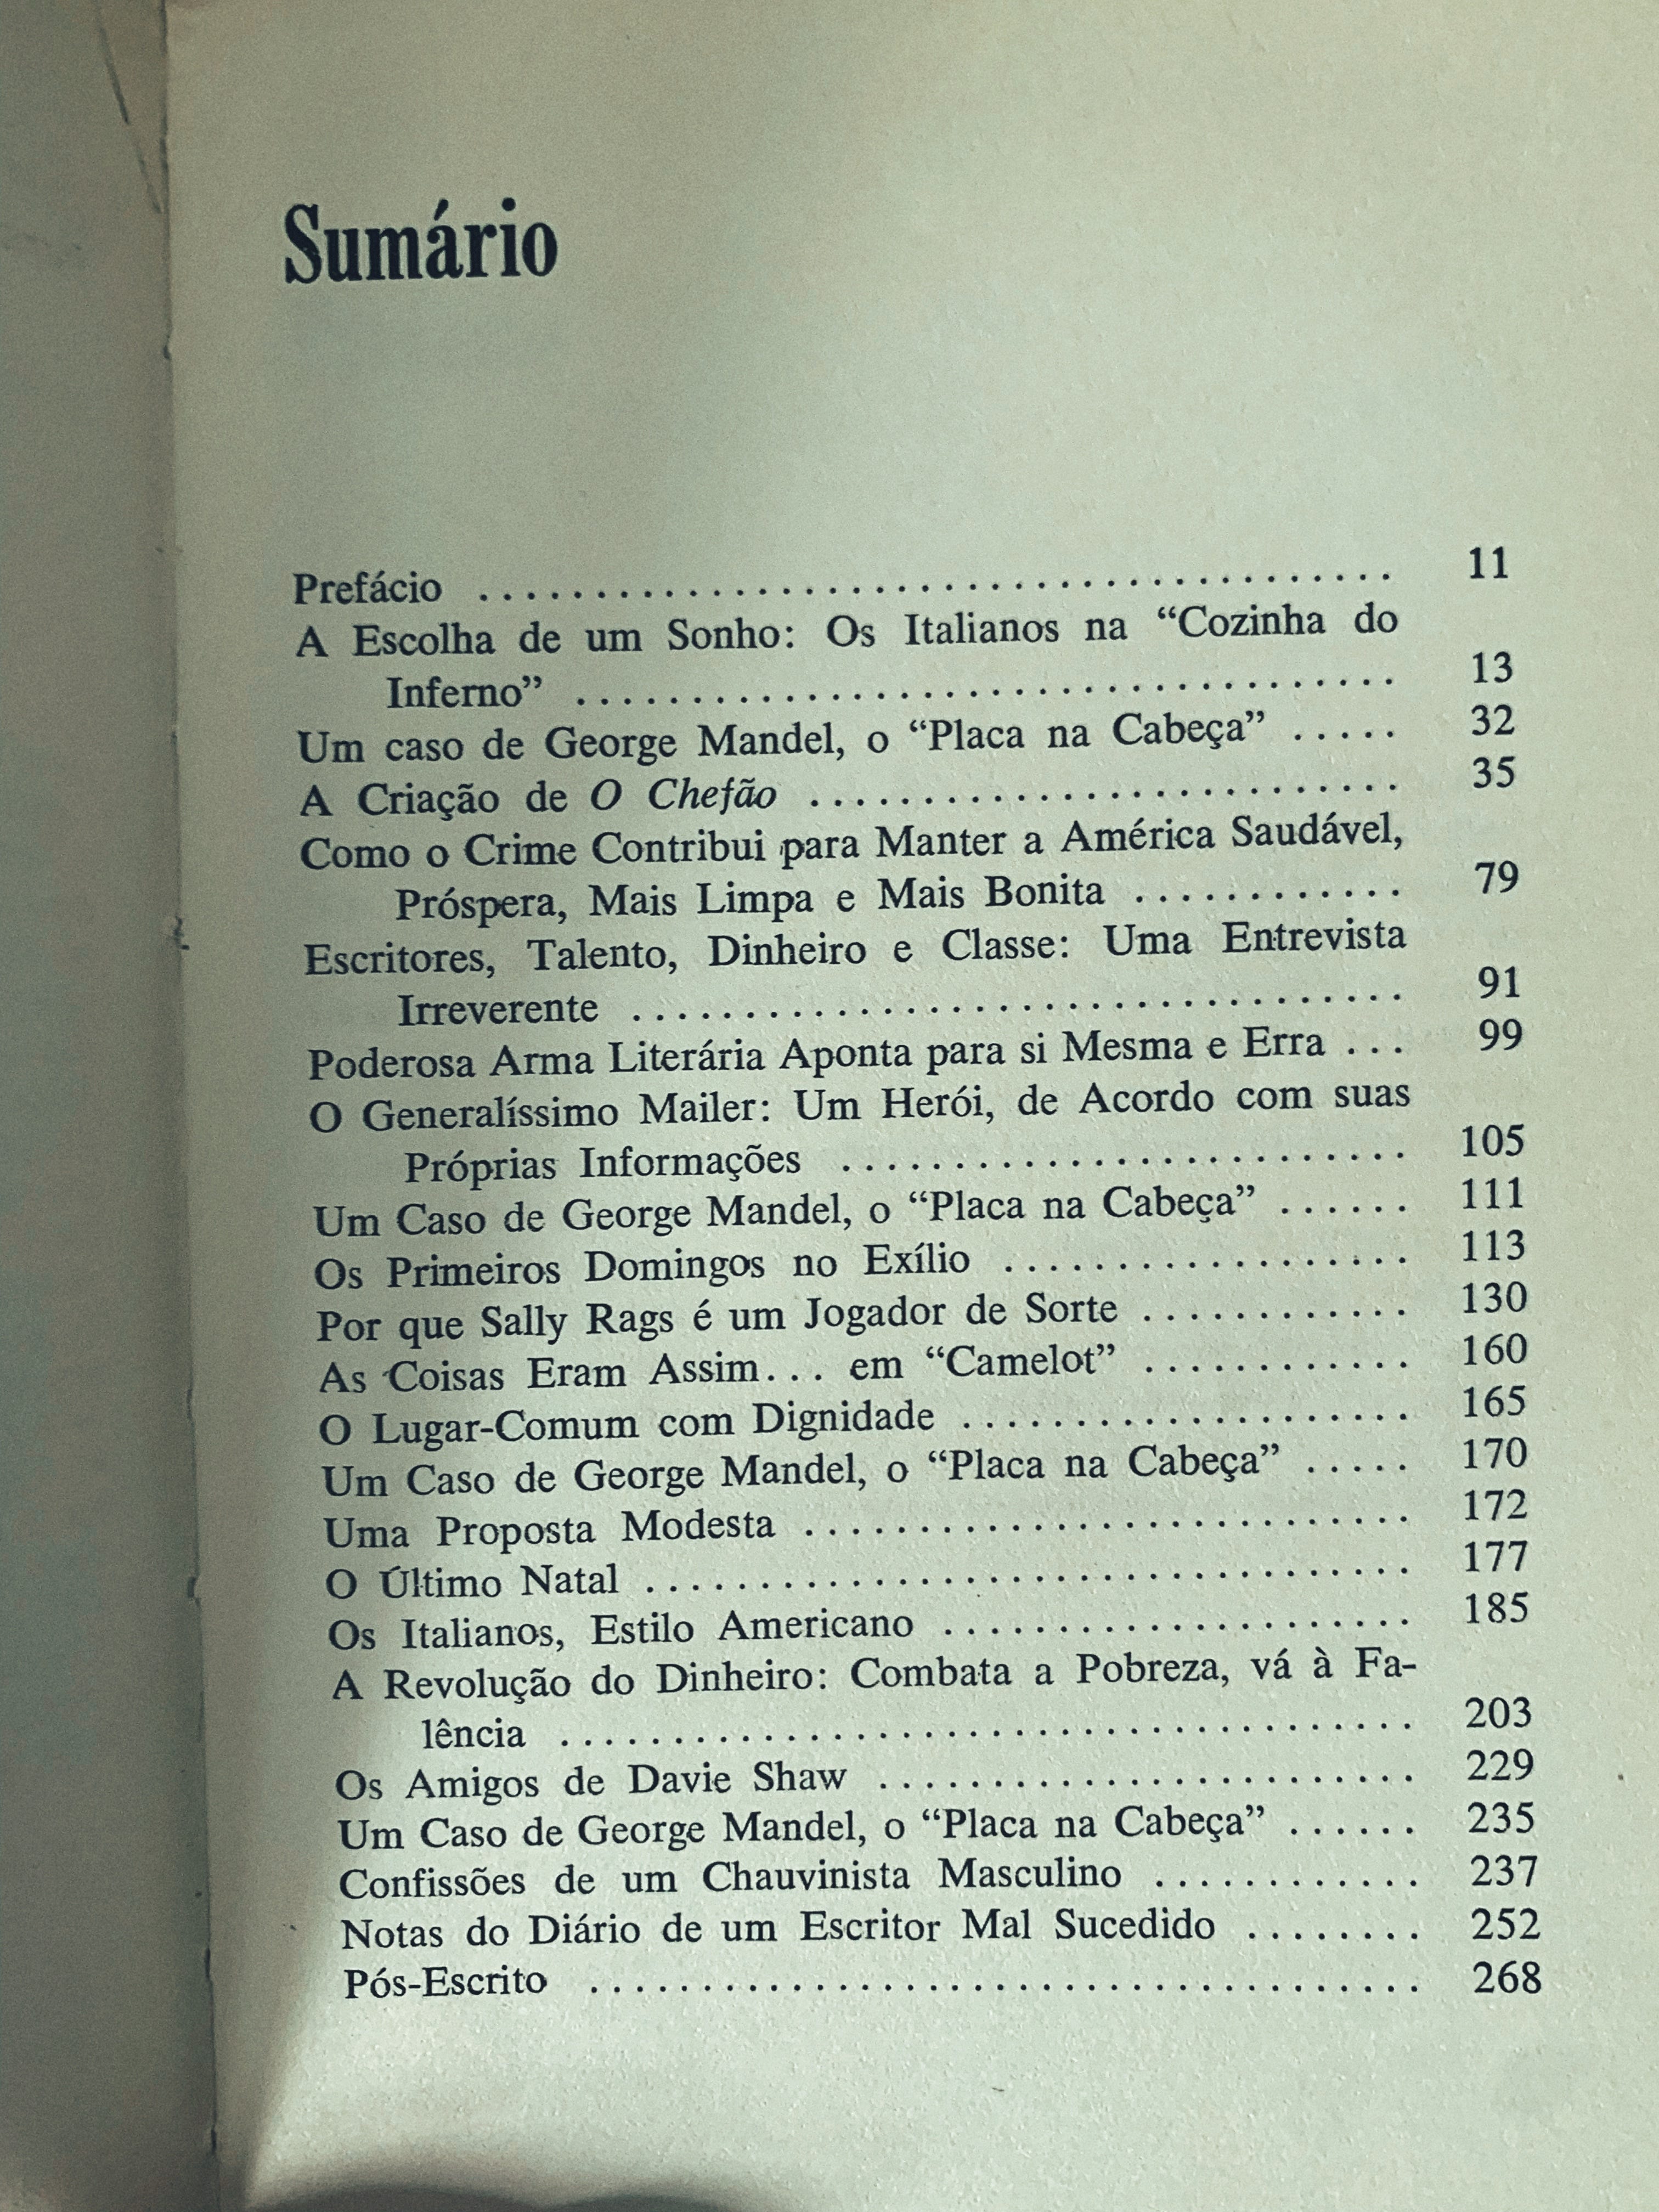 Arqueologia de Sarjeta (2) - by Luis Villaverde - No Escuro